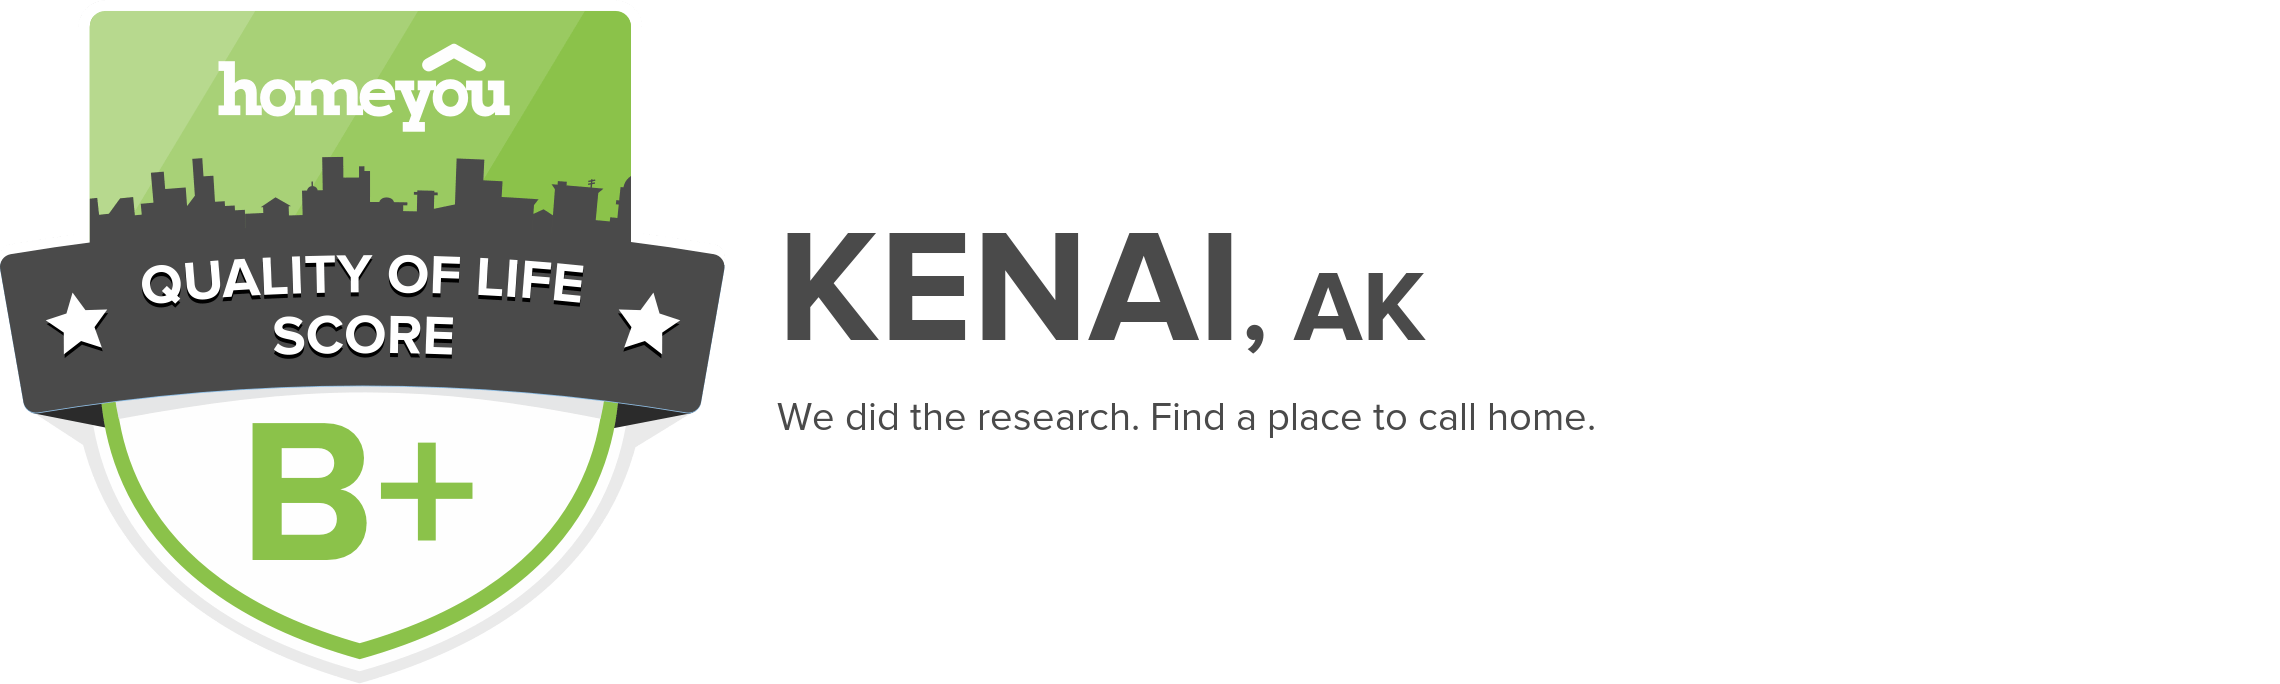 Kenai, AK